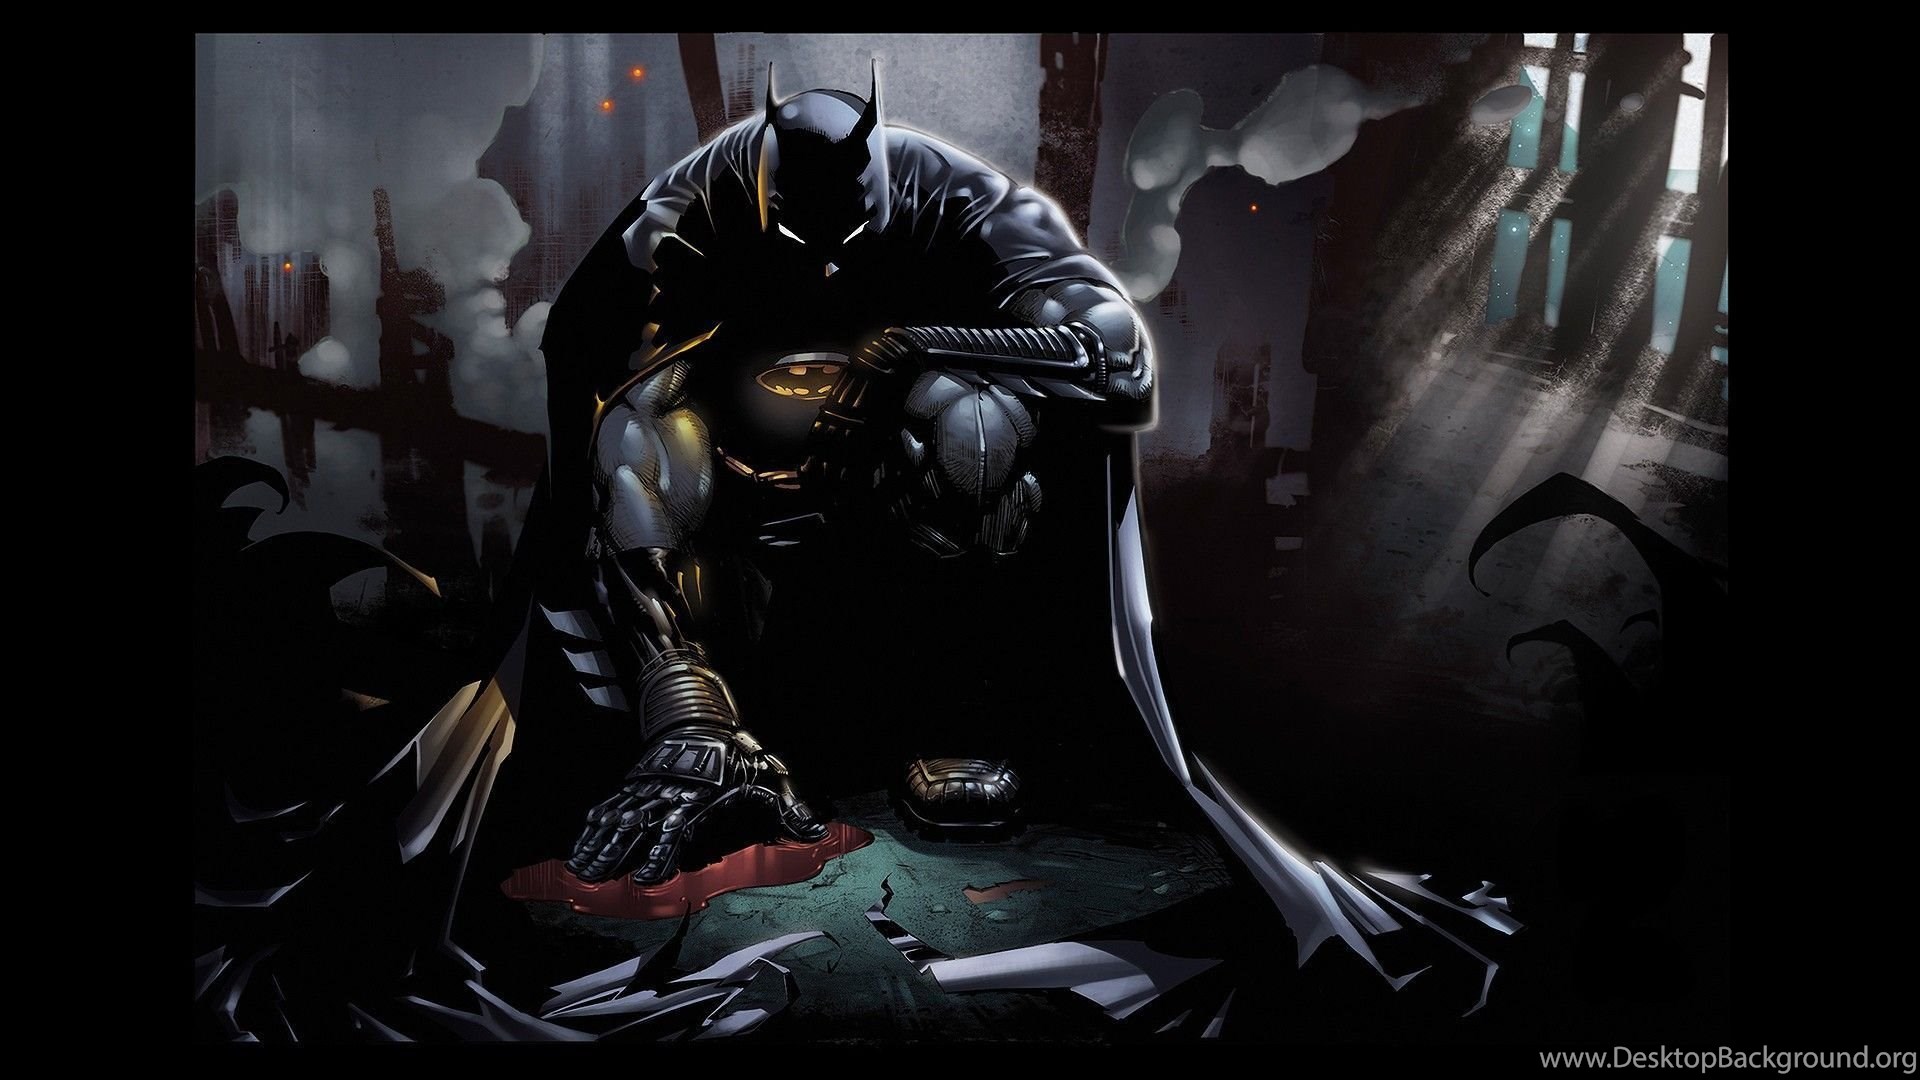 papel tapiz de arte de batman,oscuridad,personaje de ficción,cg artwork,hombre murciélago,ilustración